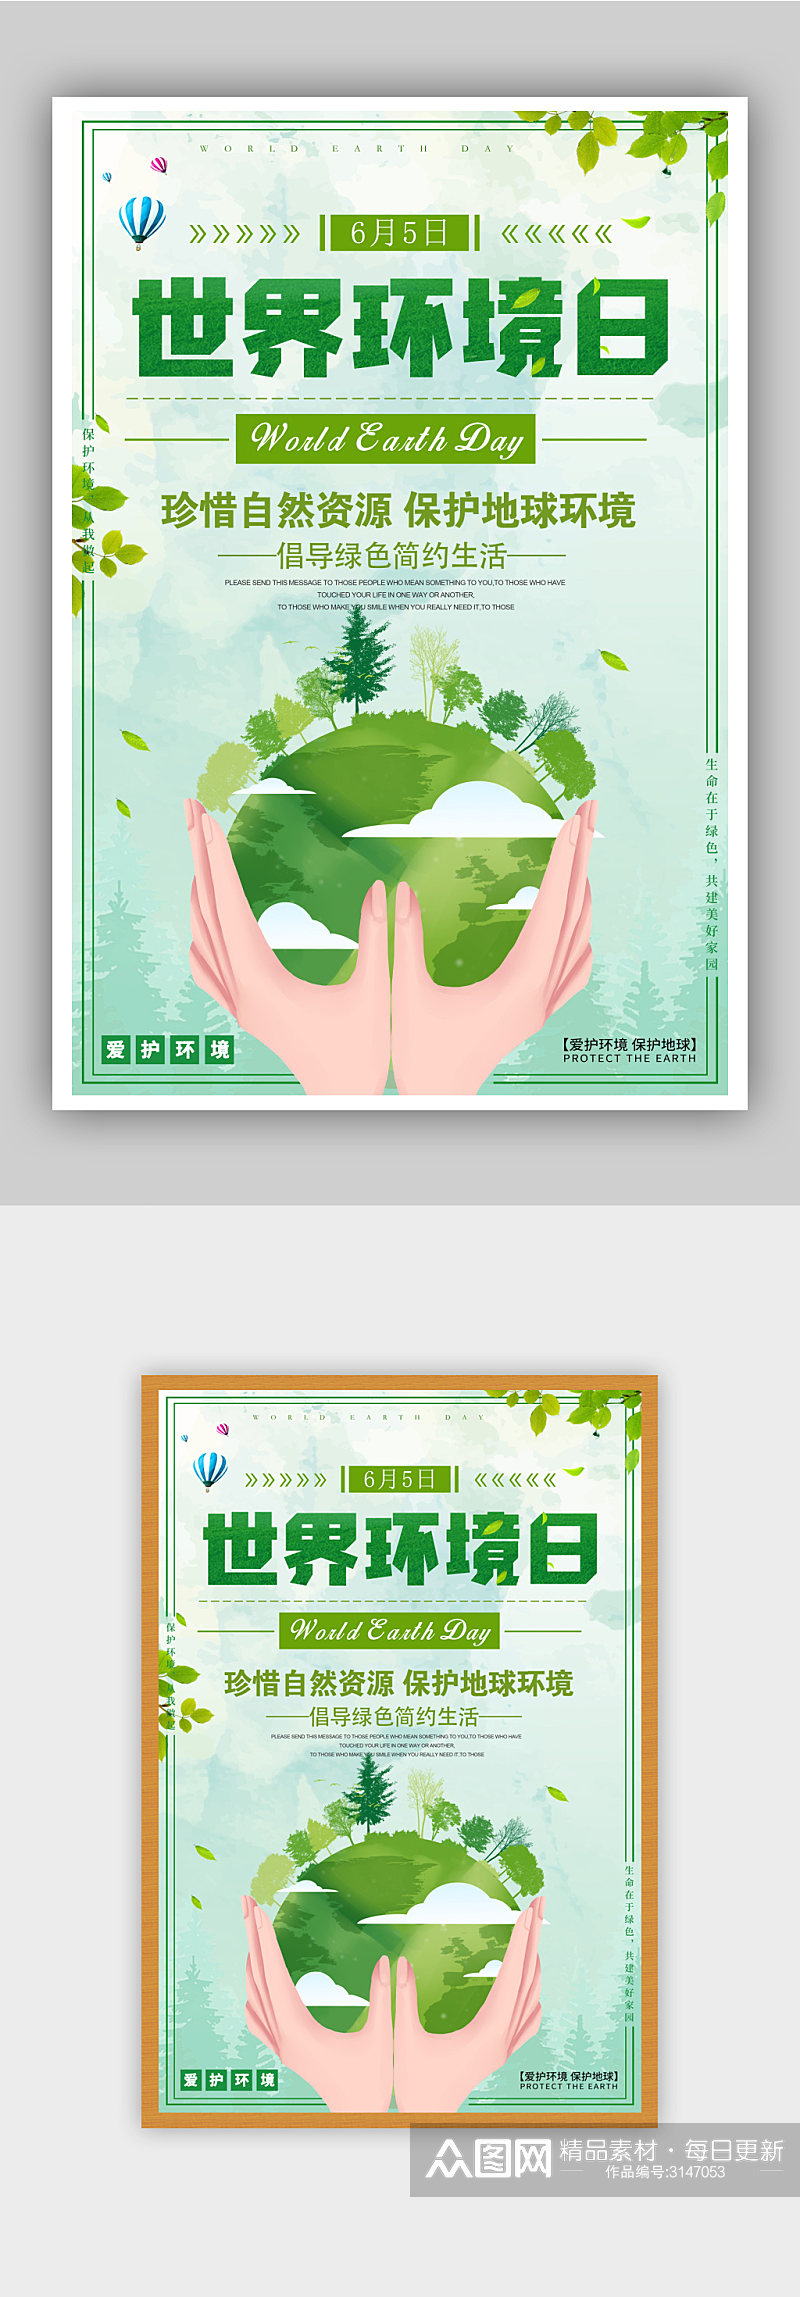 世界环境日宣传海报素材